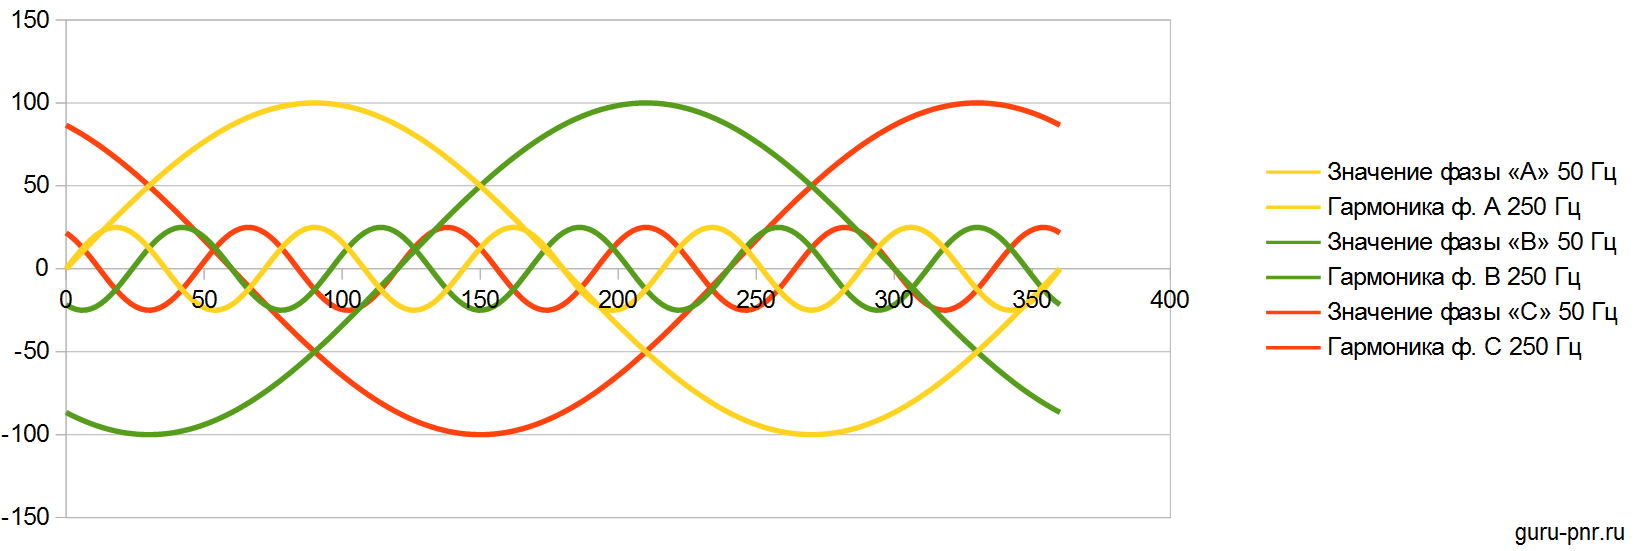 Гармоники 1, 7, 13, образующие прямую последовательность